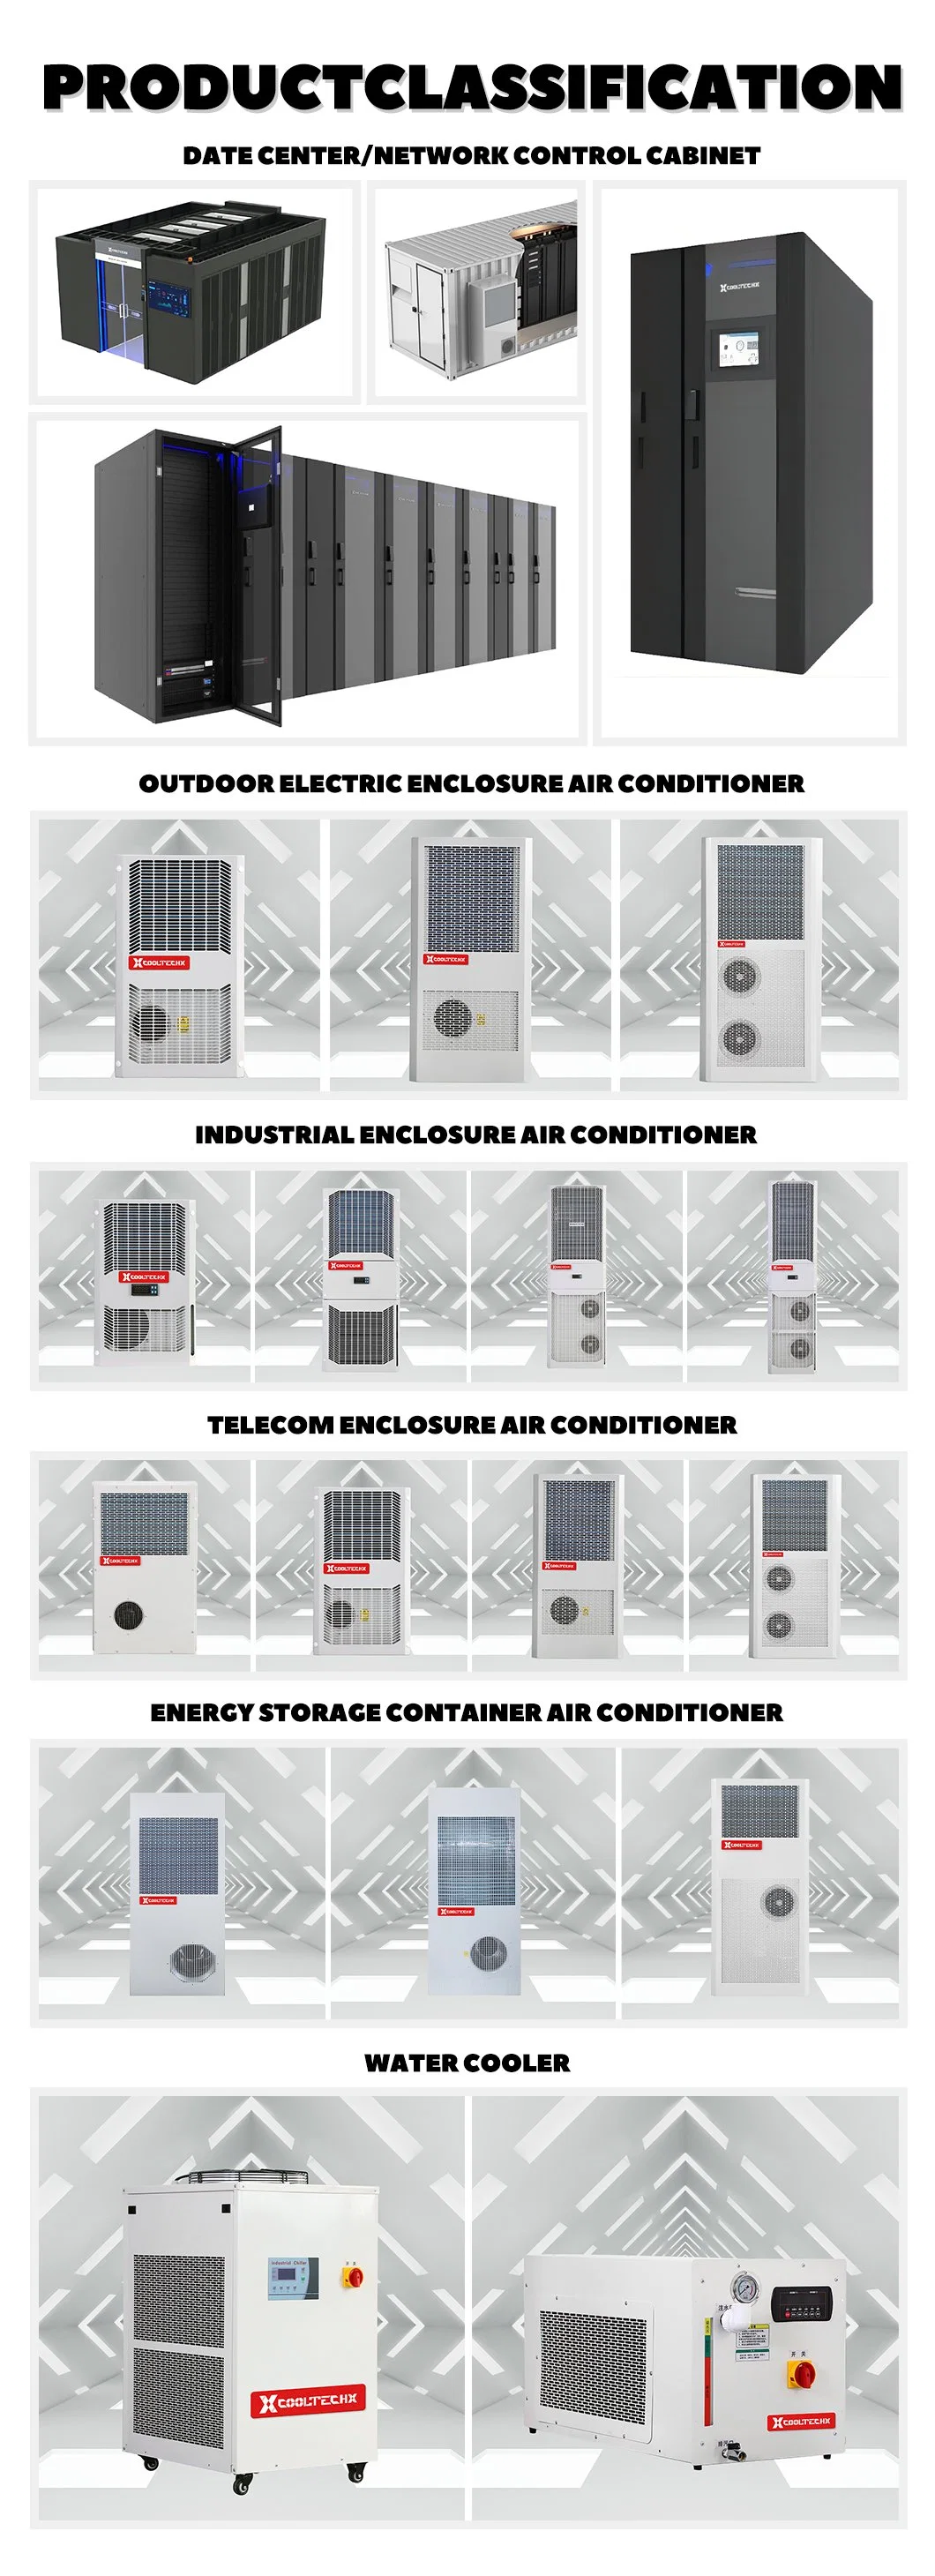 Energy Storage Container Air Conditioner Operating Temperature Range -15-45